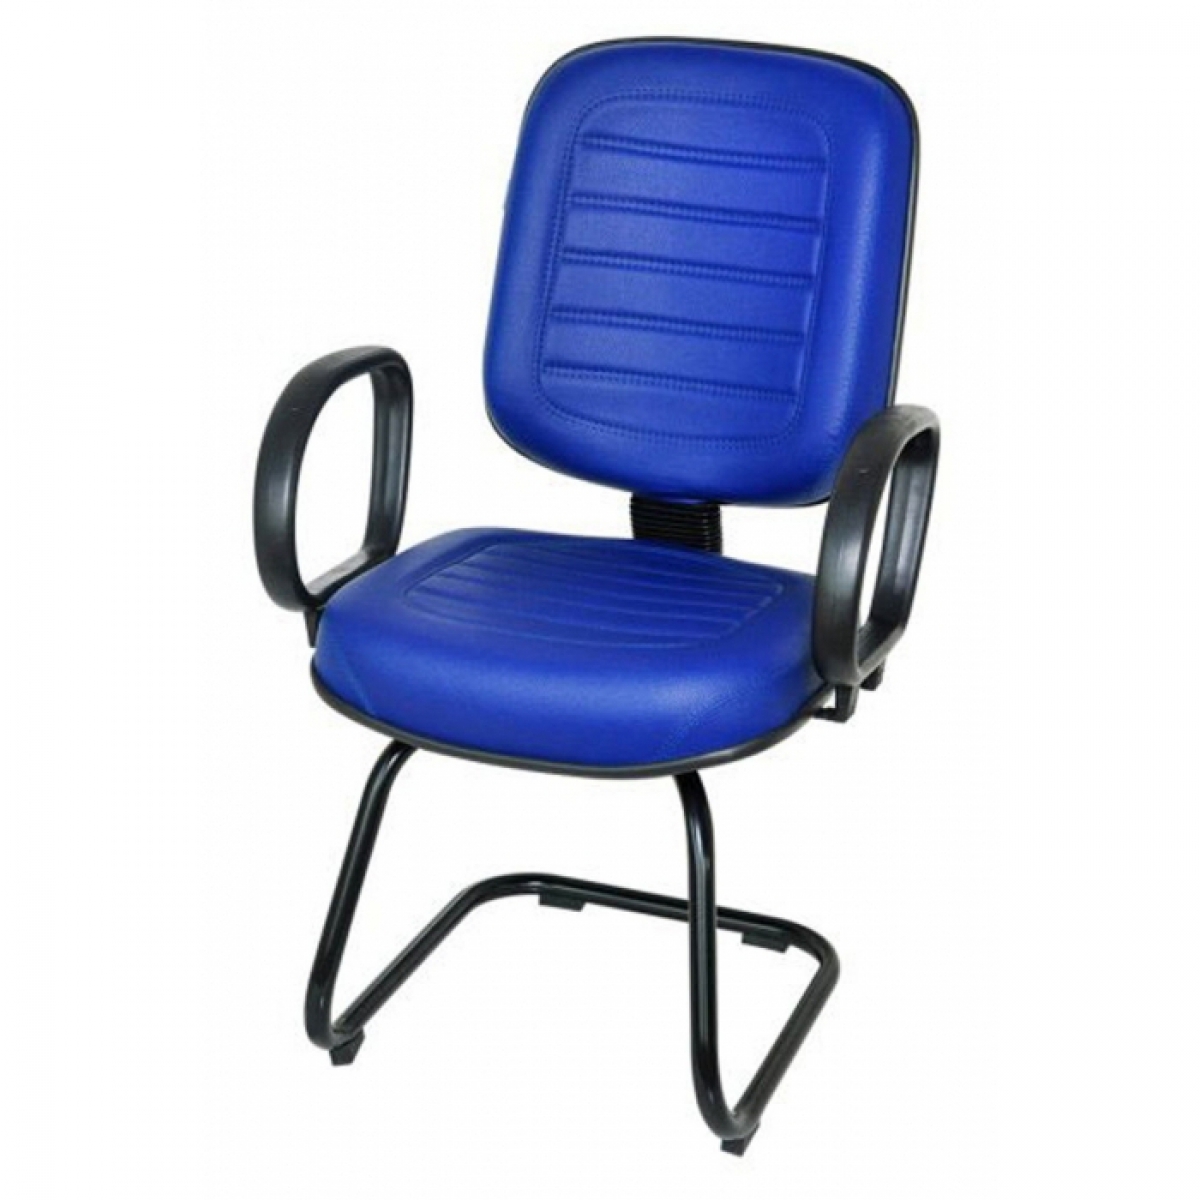 CAD - 14 Cadeira Para Escritório Diretor S Costurada Com Lamina e Braço Estofada Varias Cores